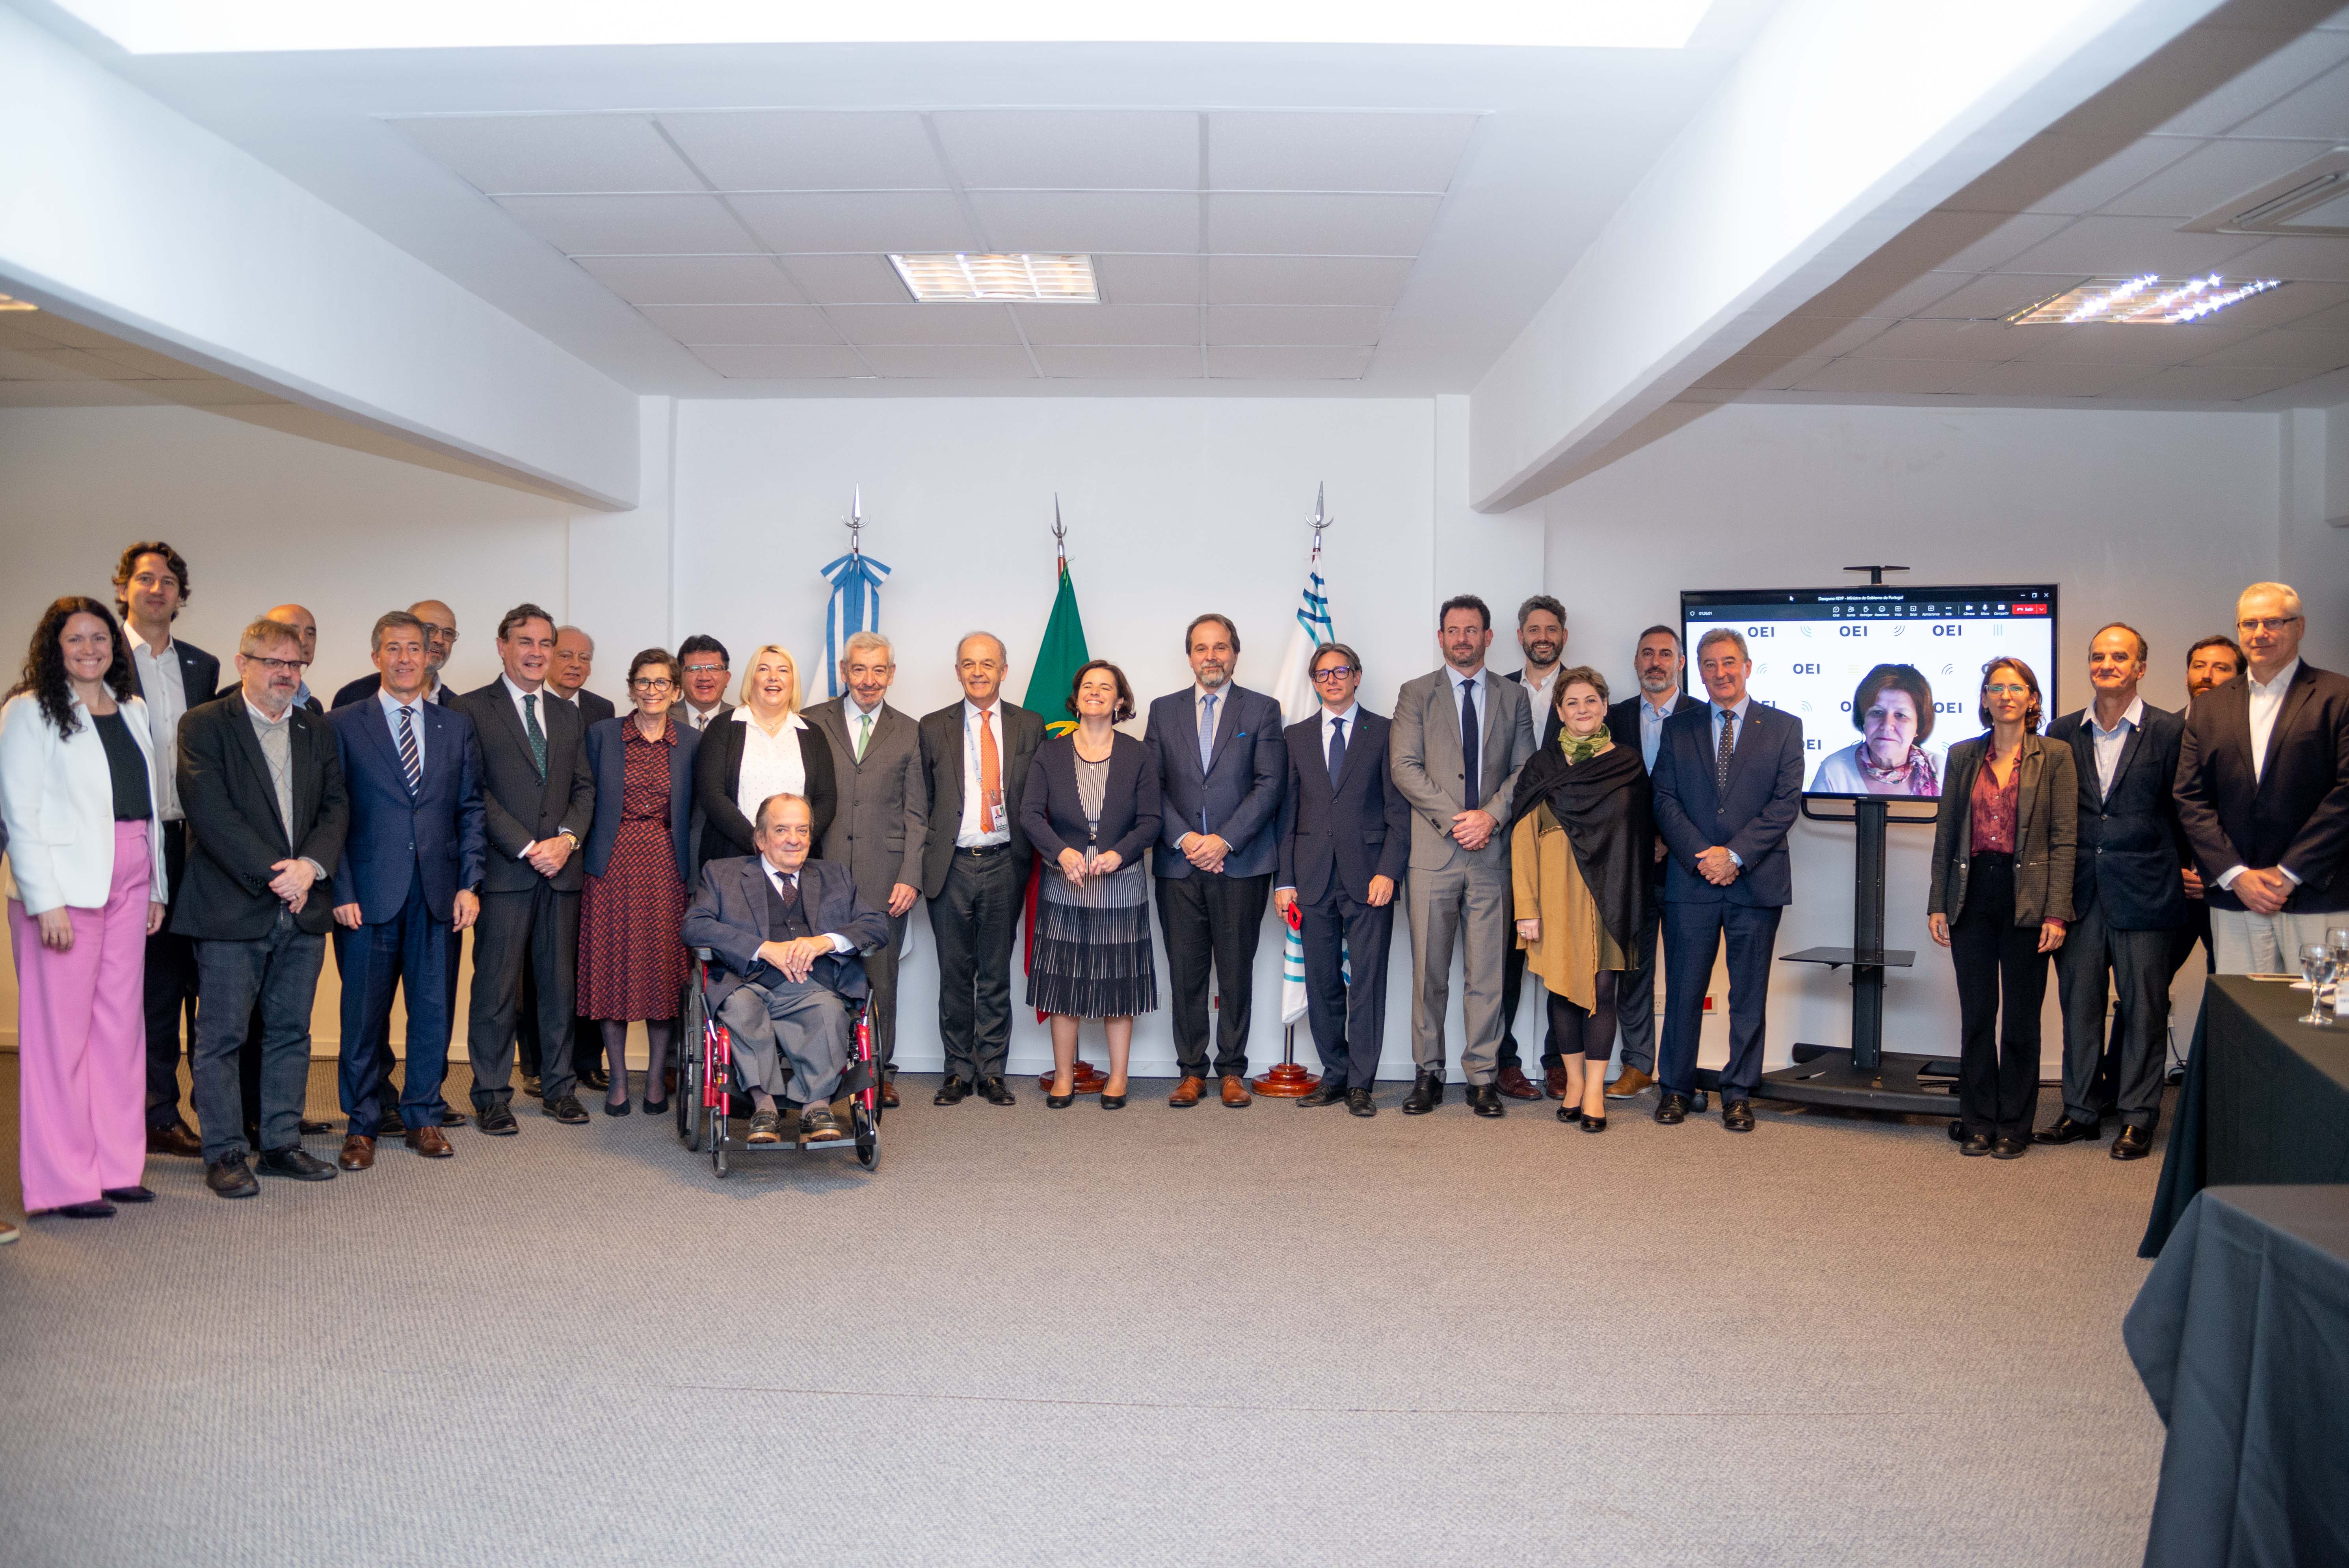 A Ministra da Presidência de Portugal, Dra. Mariana Vieira da Silva, participou numa reunião de trabalho da OEI na Argentina